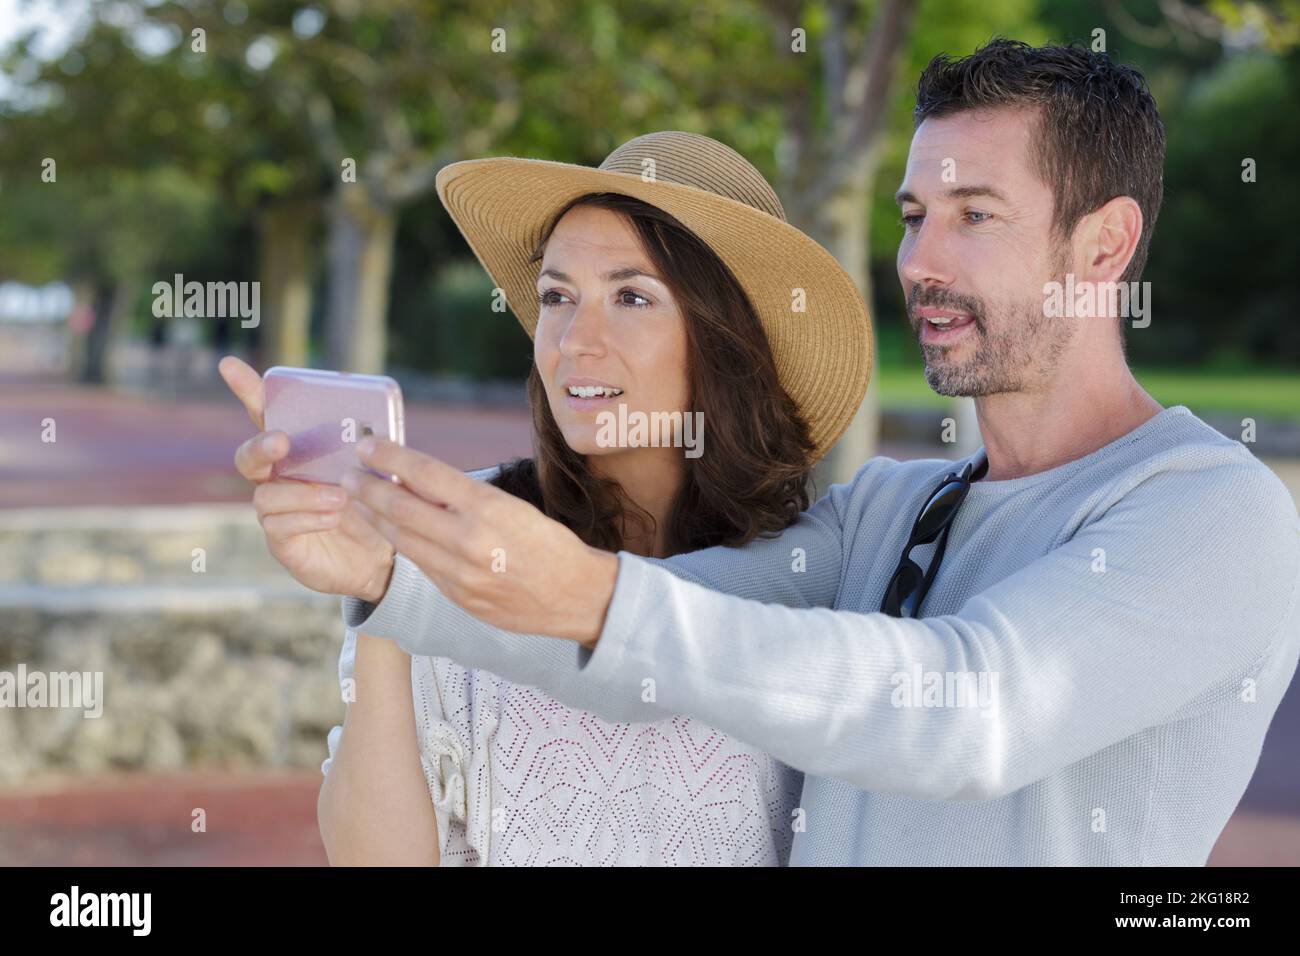 Paar, die mit einem Smartphone fotografieren Stockfoto